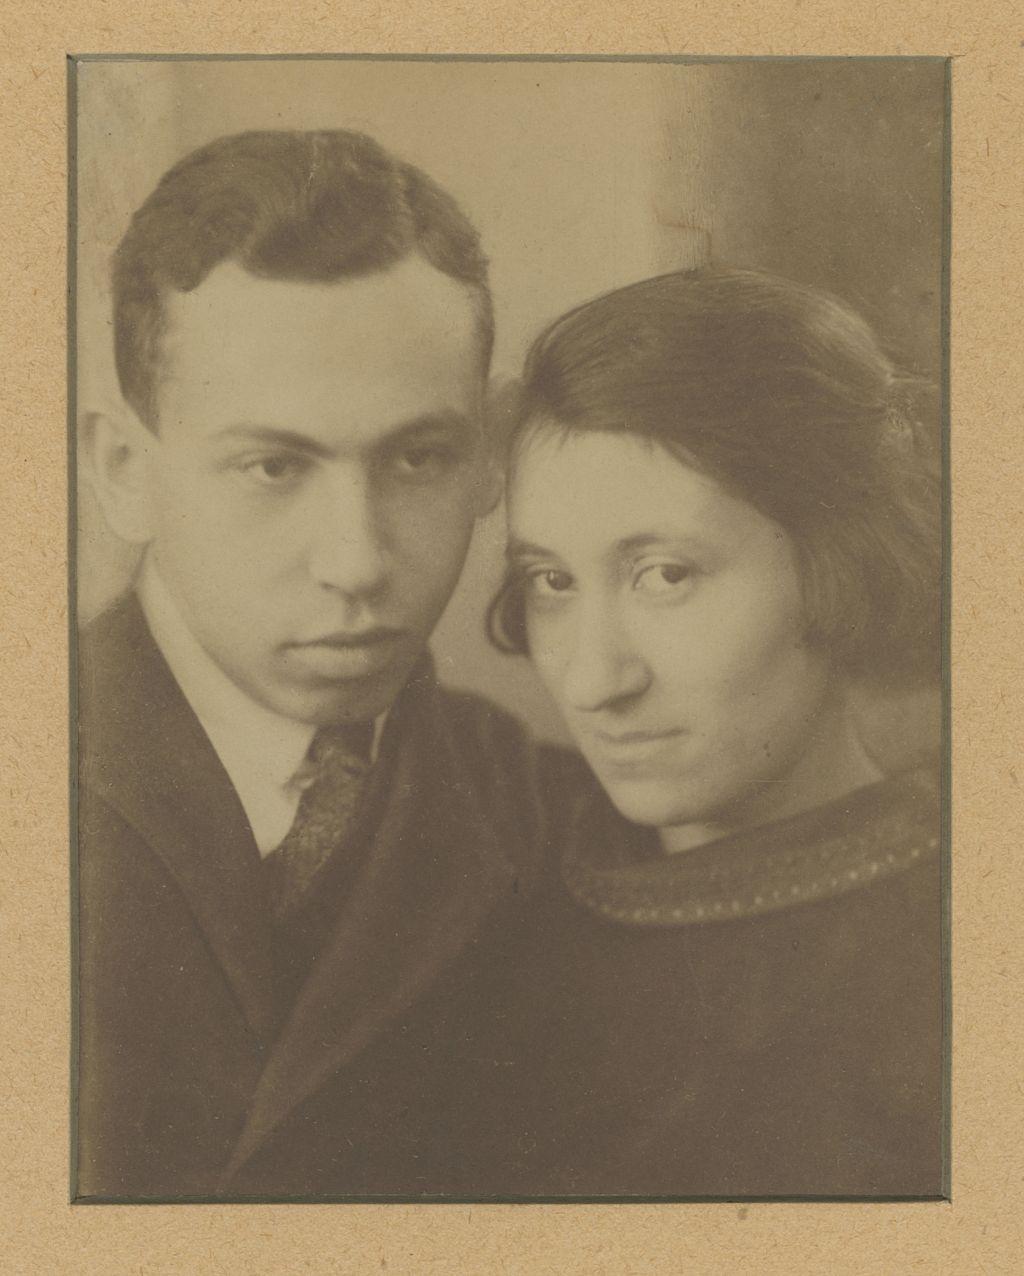 Barta Sándor és Újvári Erzsi házassági portréja, Budapest, 1919 (Braun-Barta család gyűjteménye)